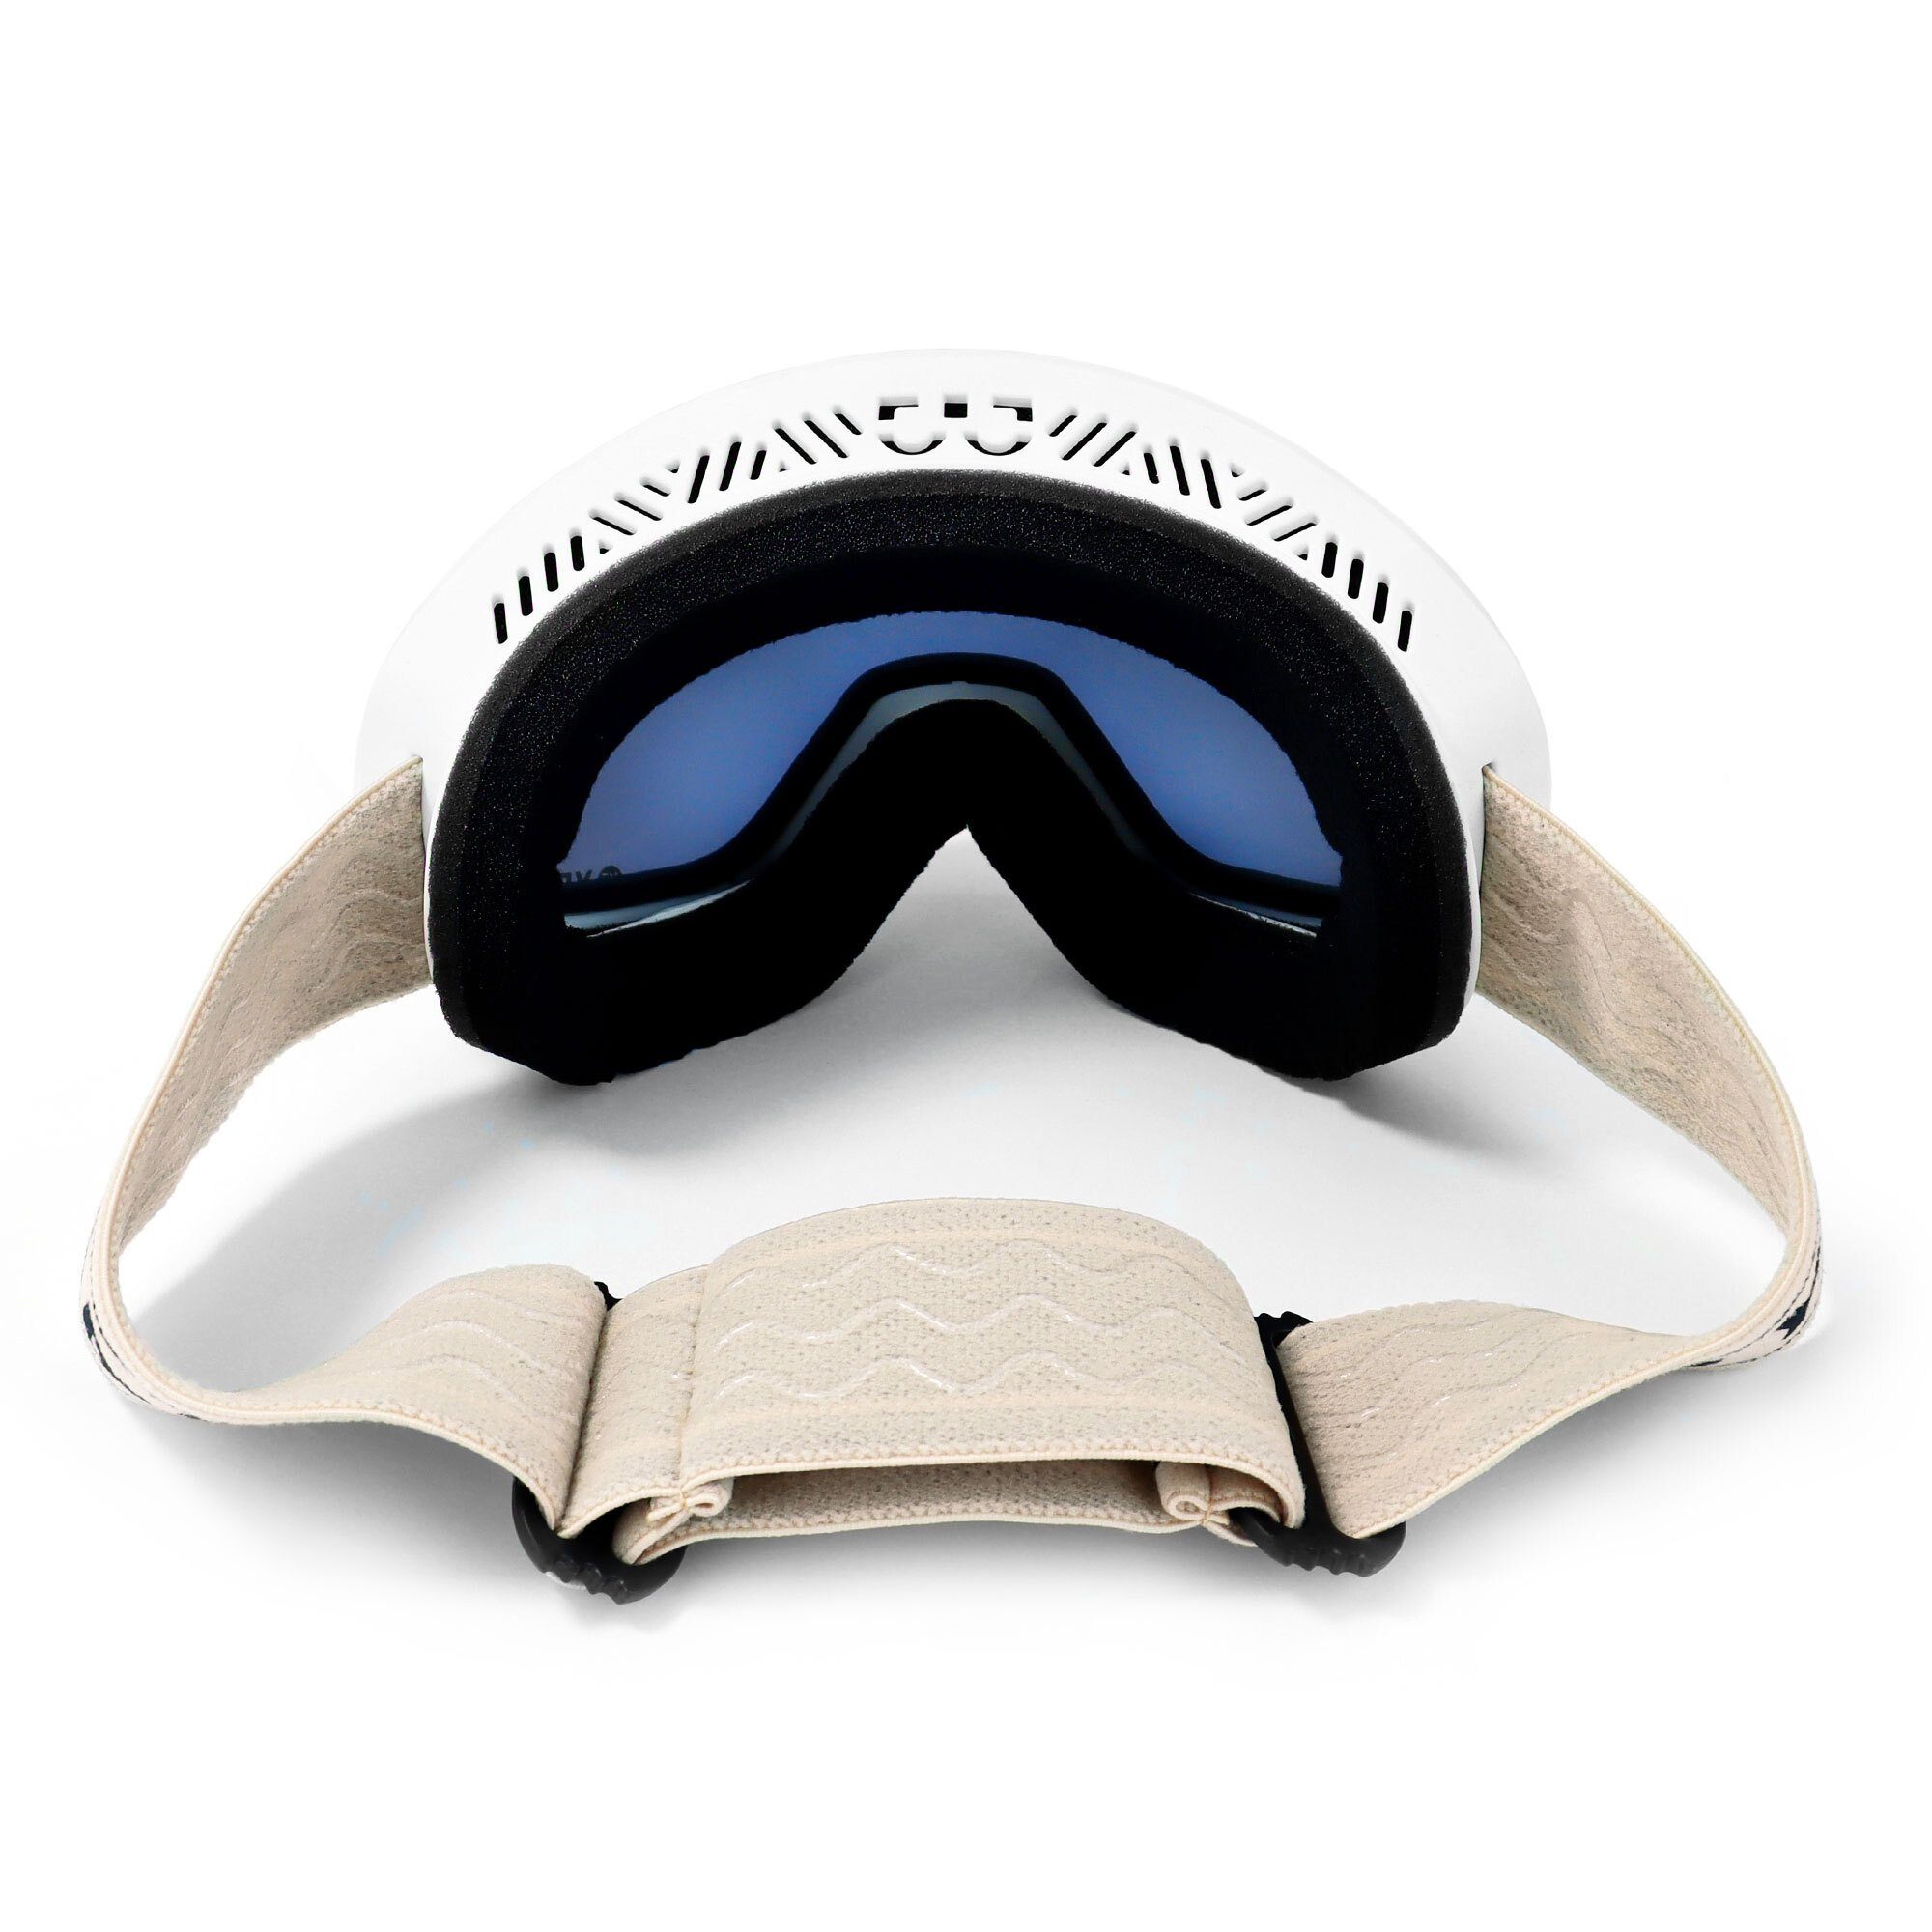 Skibrille BLACK und Snowboardbrille YEAZ Jugendliche ski- Premium-Ski- und snowboard-brille, Erwachsene und RUN für